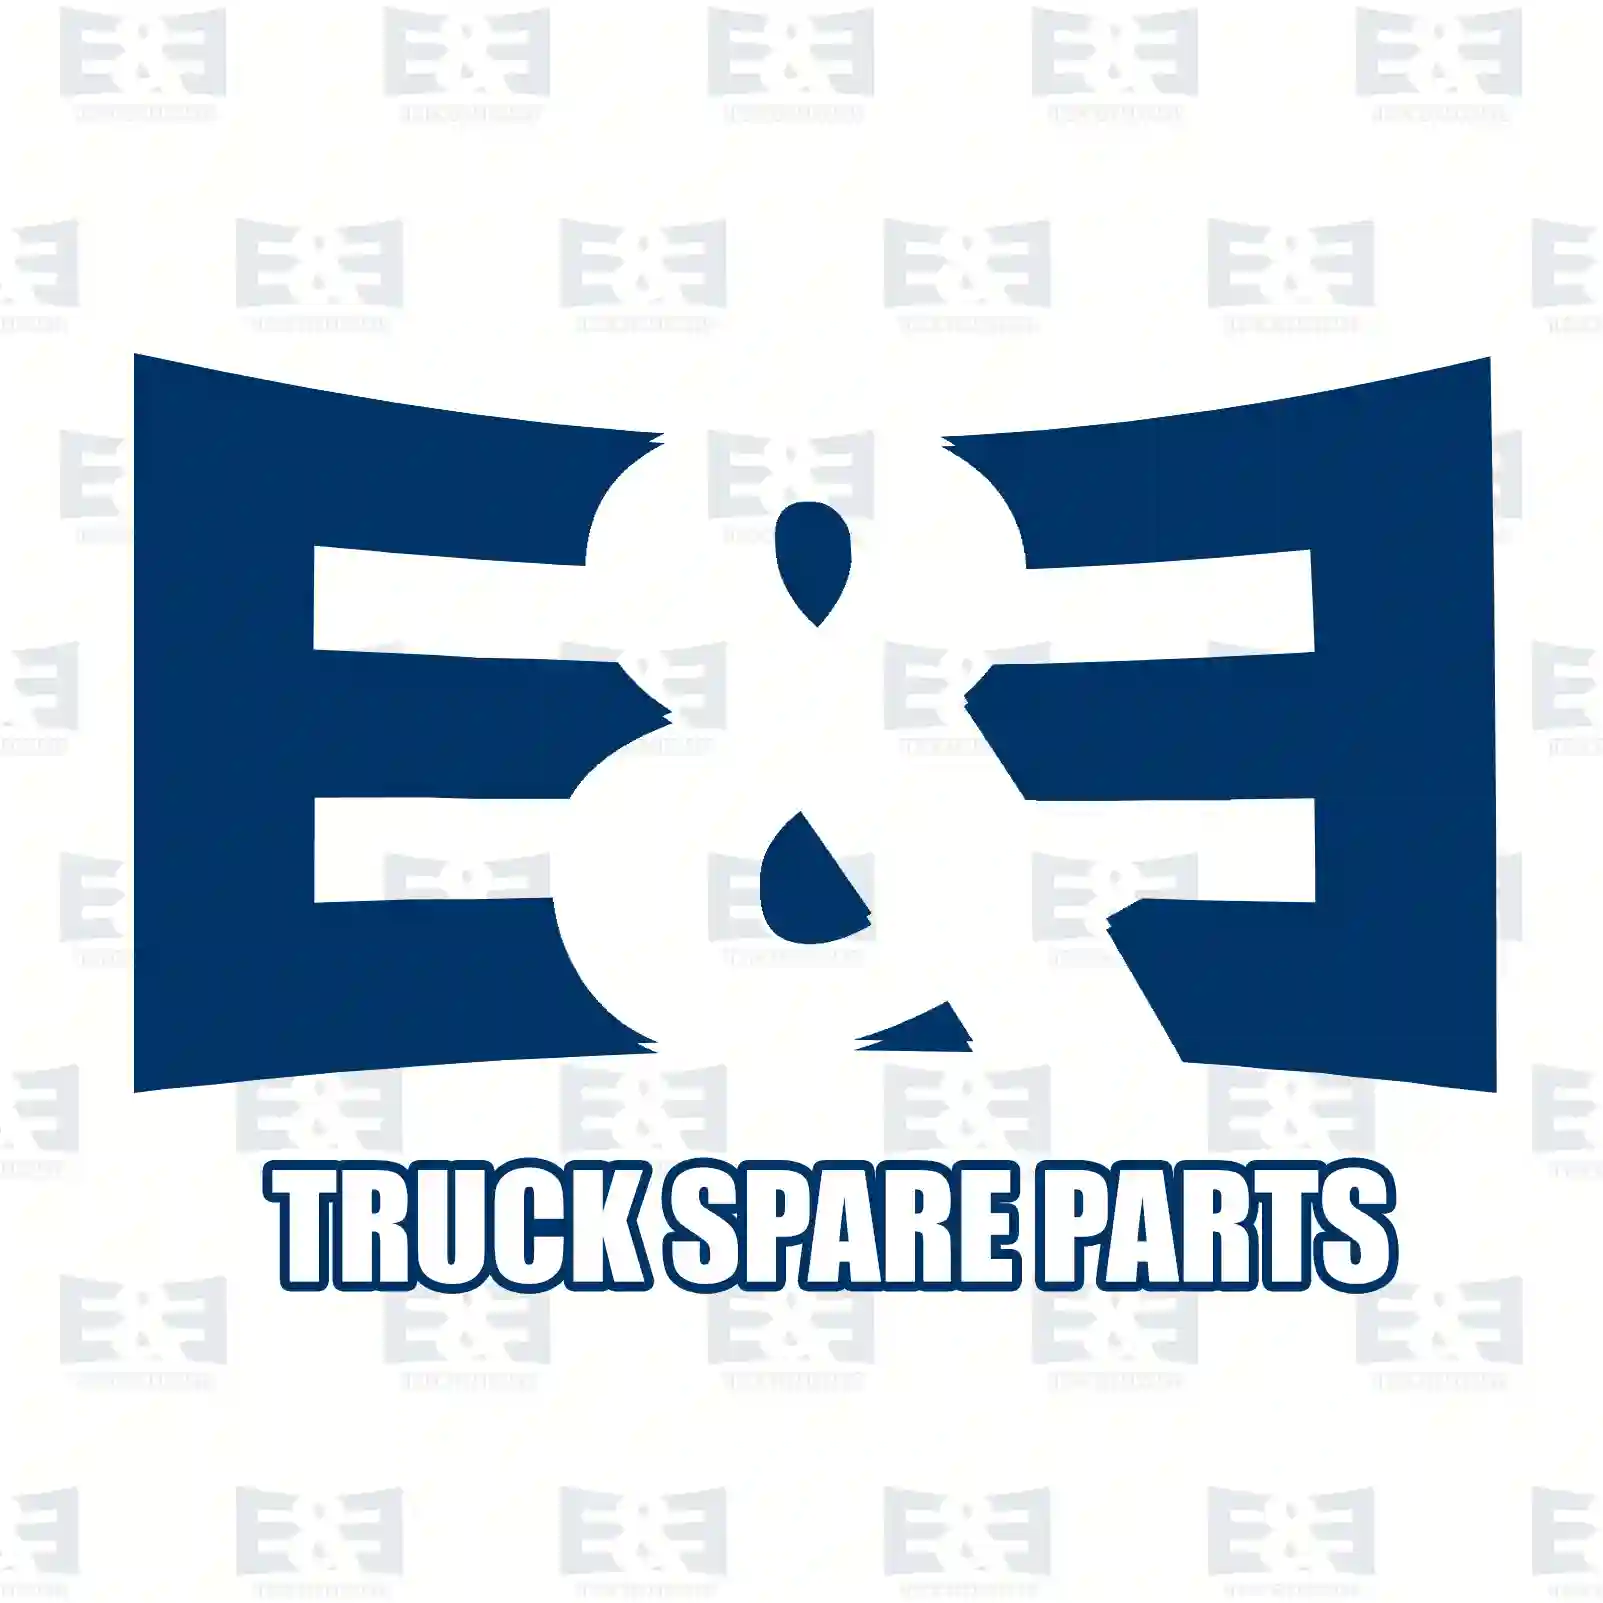 Quick release valve, 2E2294642, 1518276, 1935673, 3181127 ||  2E2294642 E&E Truck Spare Parts | Truck Spare Parts, Auotomotive Spare Parts Quick release valve, 2E2294642, 1518276, 1935673, 3181127 ||  2E2294642 E&E Truck Spare Parts | Truck Spare Parts, Auotomotive Spare Parts